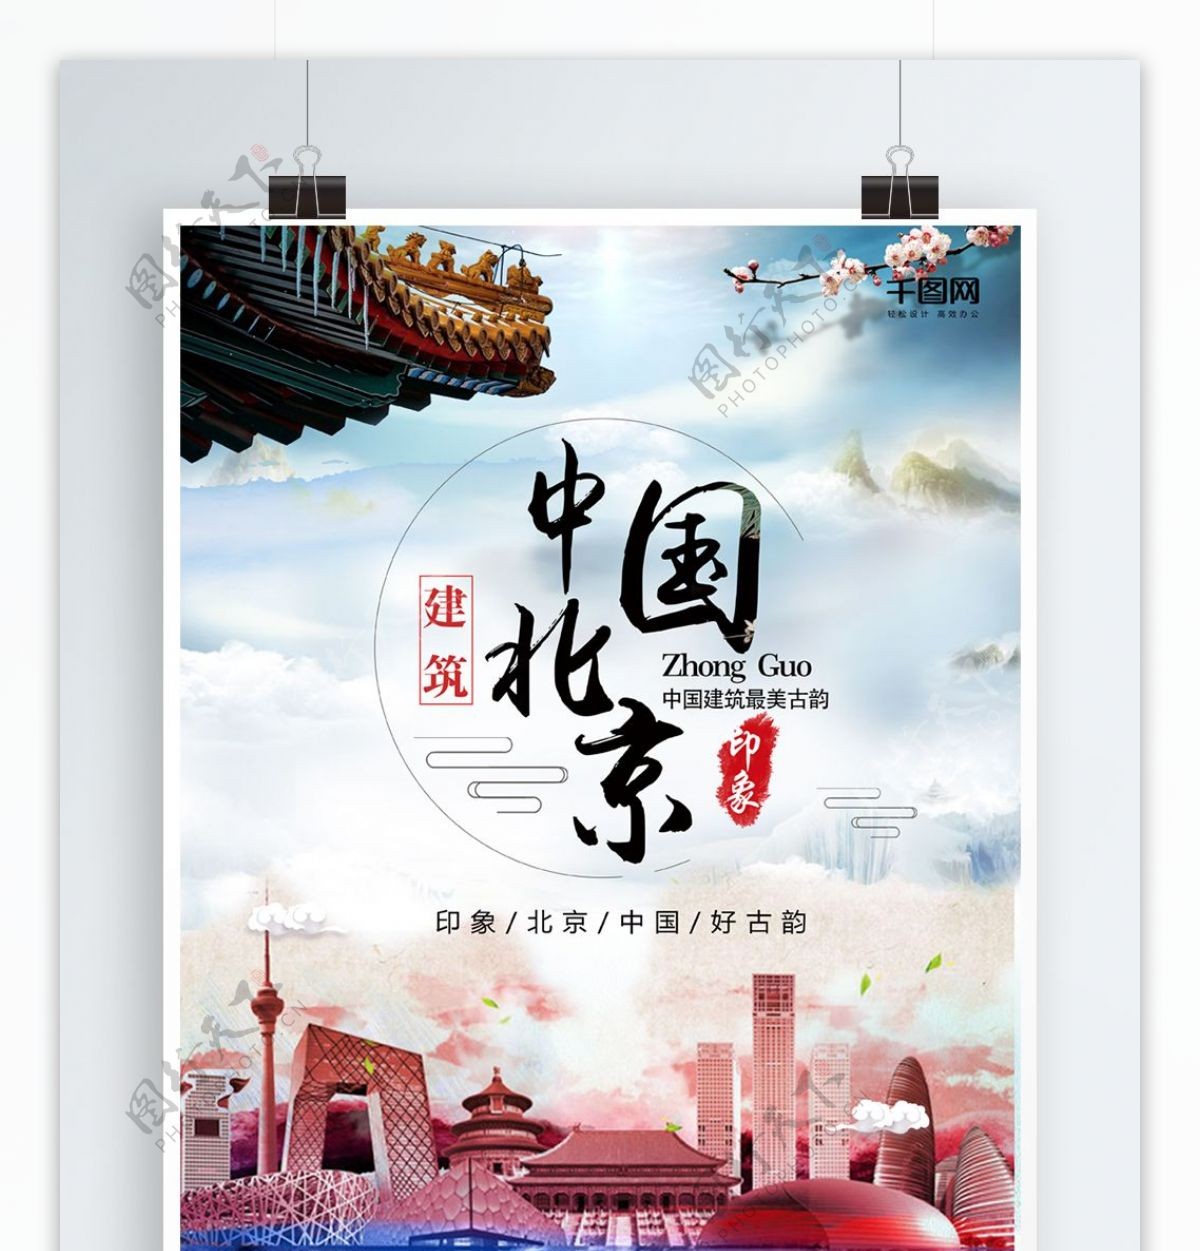 中国北京旅游中国风水墨山水画海报背景